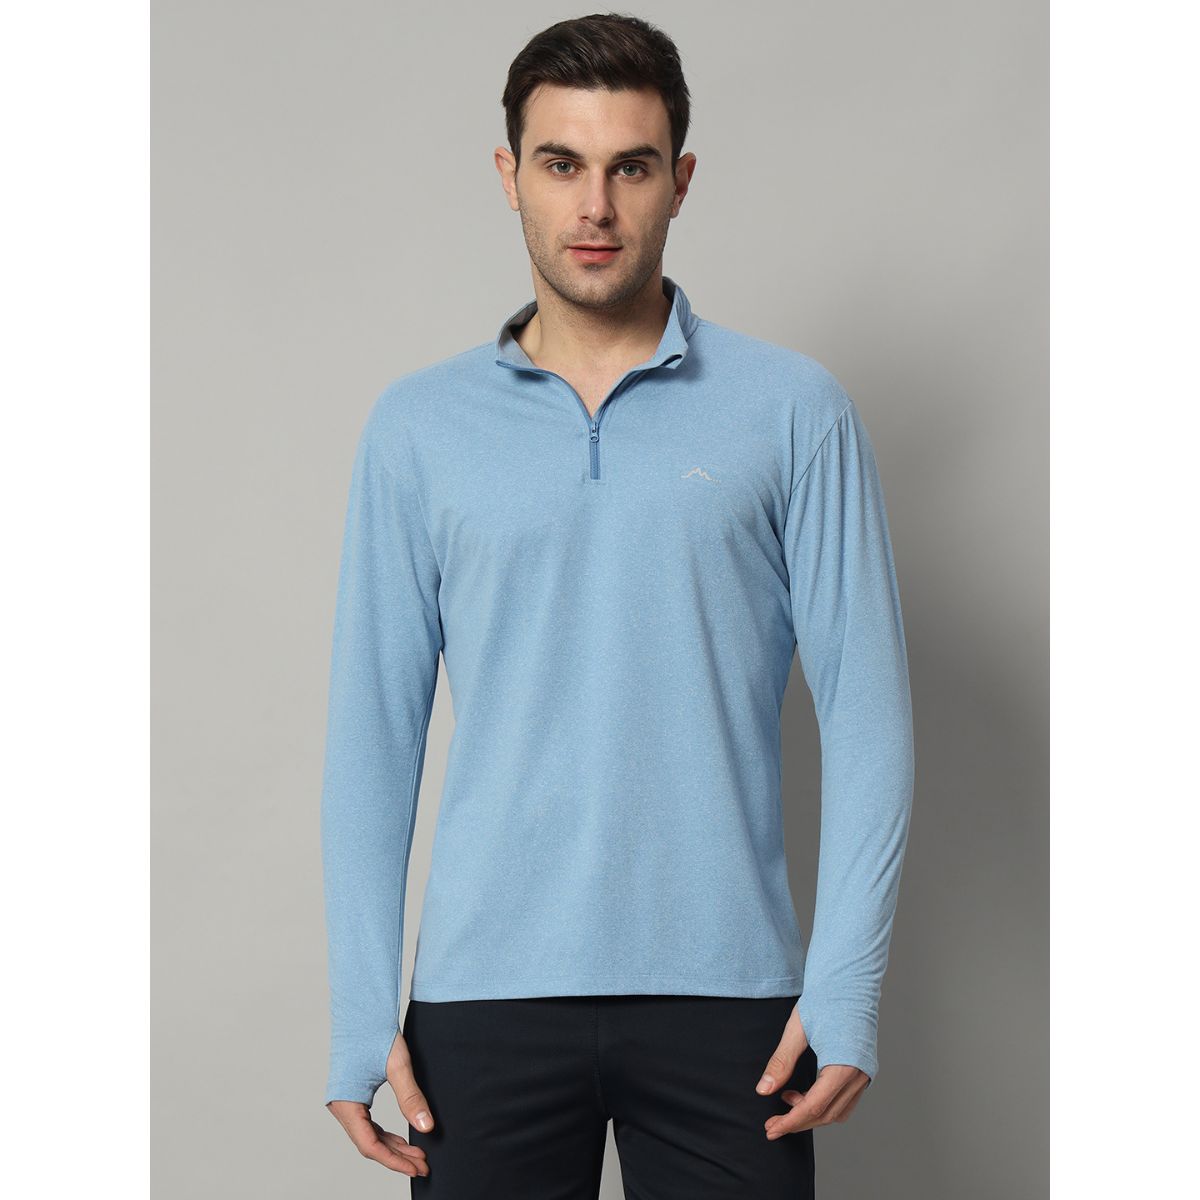 Men's Nomadic Full Sleeves T-Shirt / Baselayer - Lichen Blue 5